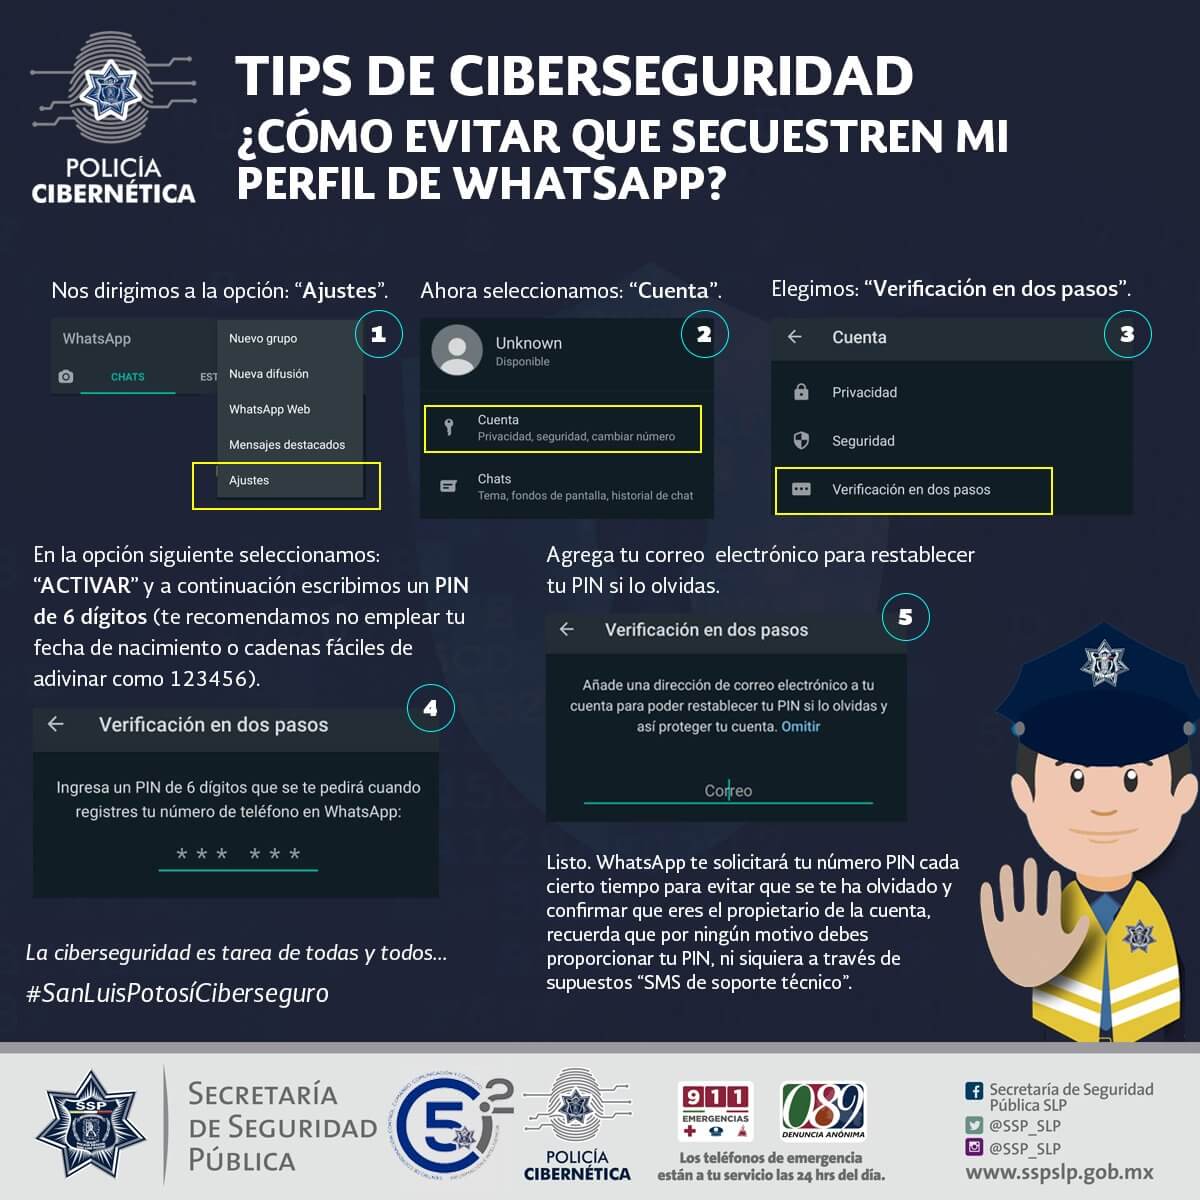 Reitera policía cibernética alerta ante el incremento de reportes de robo de cuentas de whatsapp, por le lanza medidas preventivas